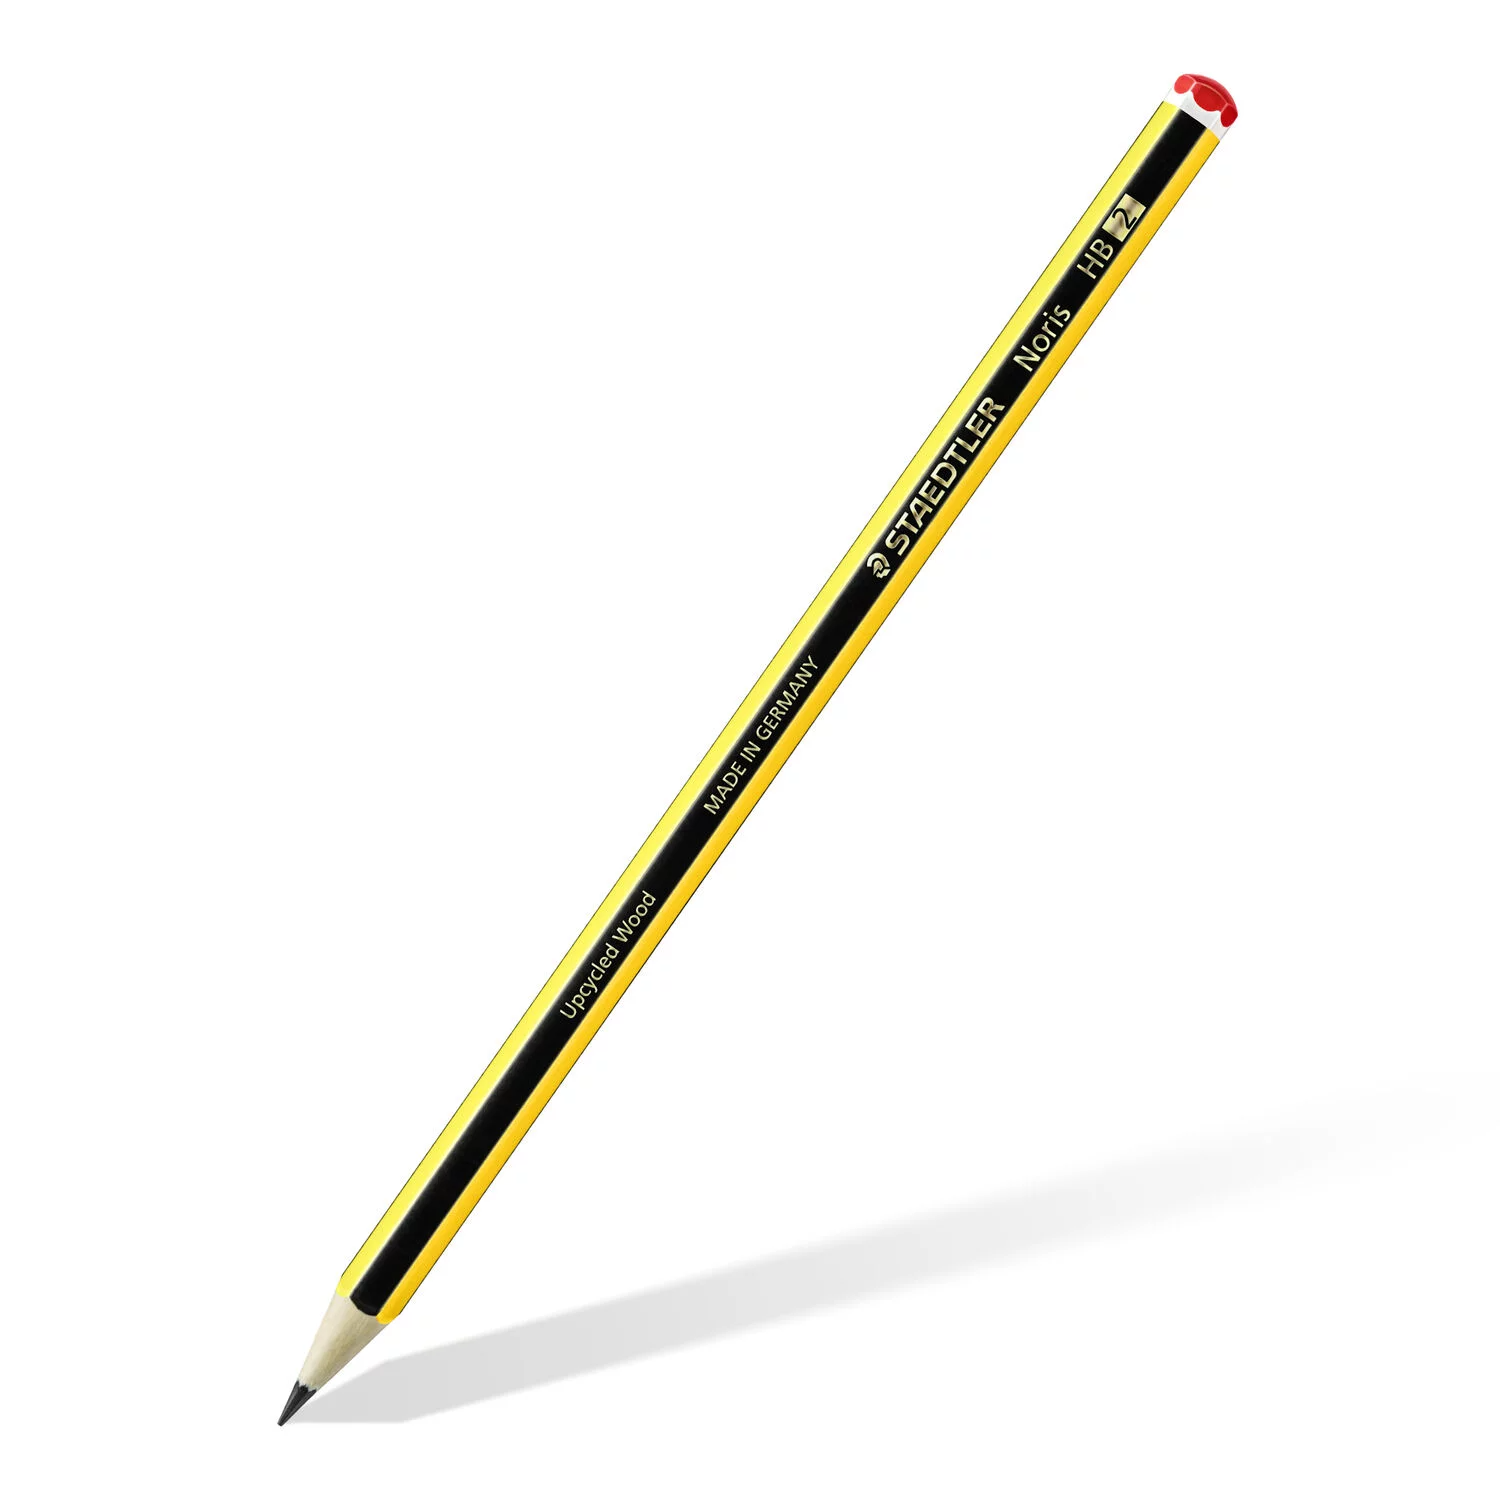 Staedtler noris Graded pencils